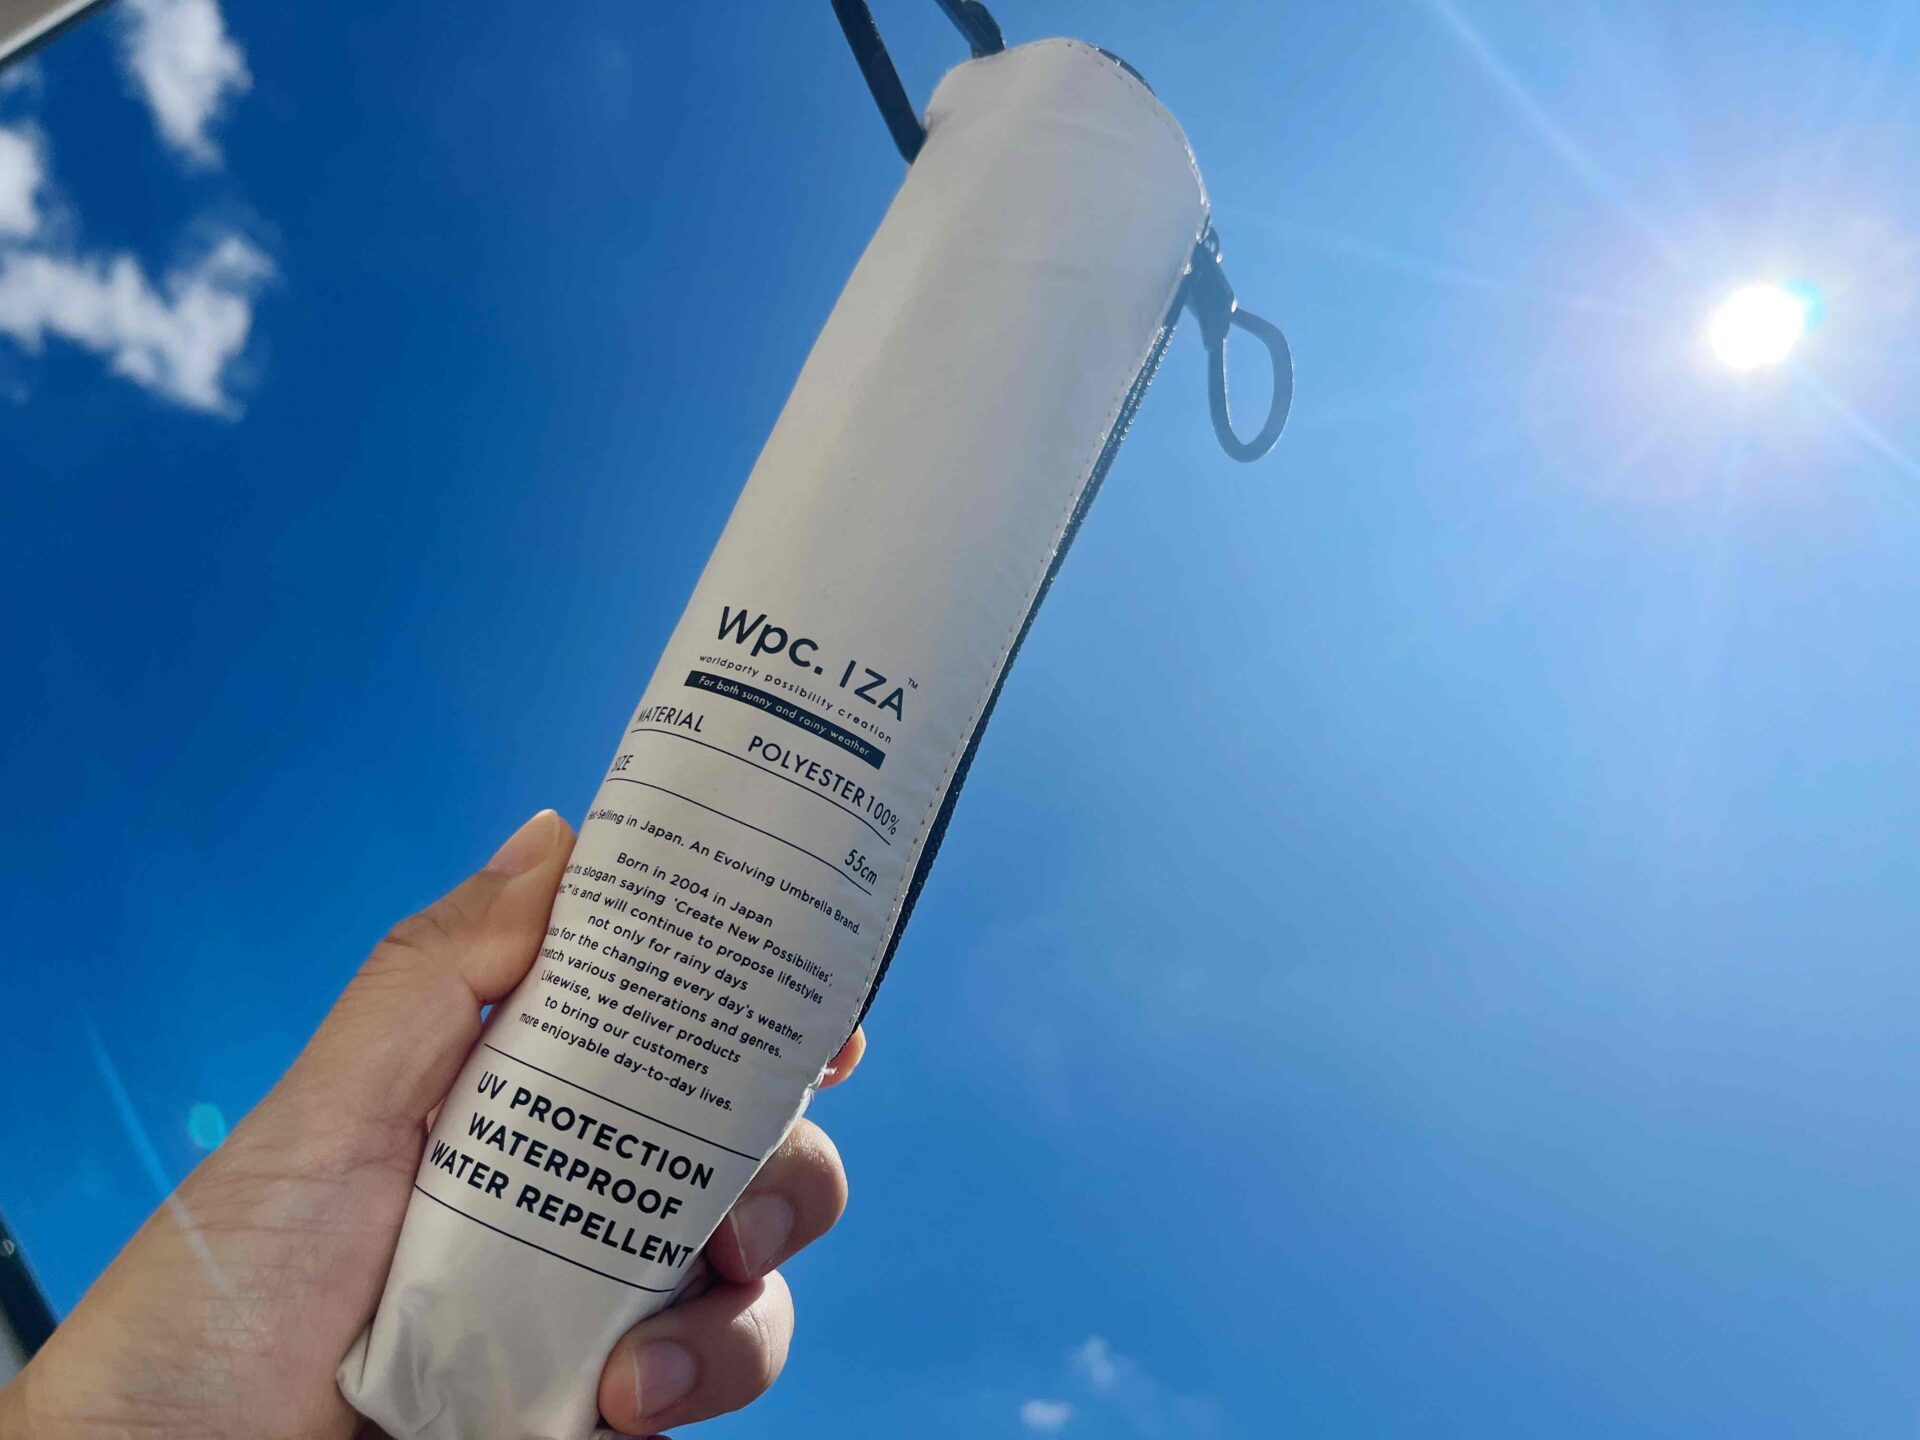 wpcイーザの折り畳み傘を手にもって青空にかざしている写真。太陽がまぶしいです